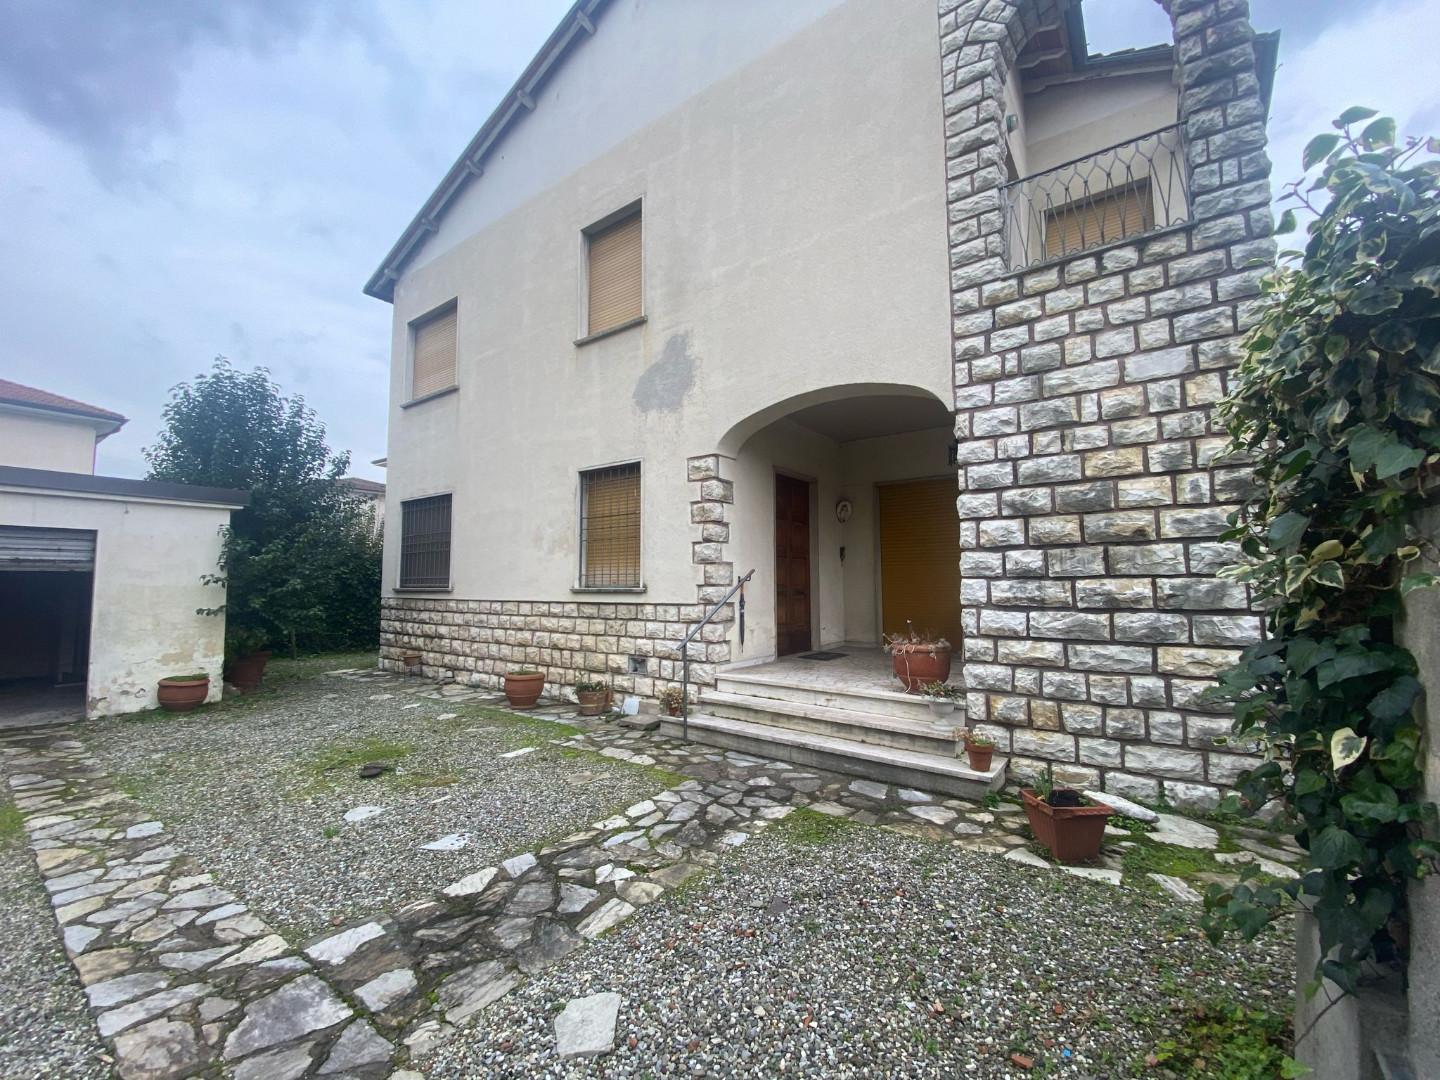 Villa Bifamiliare in vendita a Lucca, 8 locali, prezzo € 350.000 | PortaleAgenzieImmobiliari.it